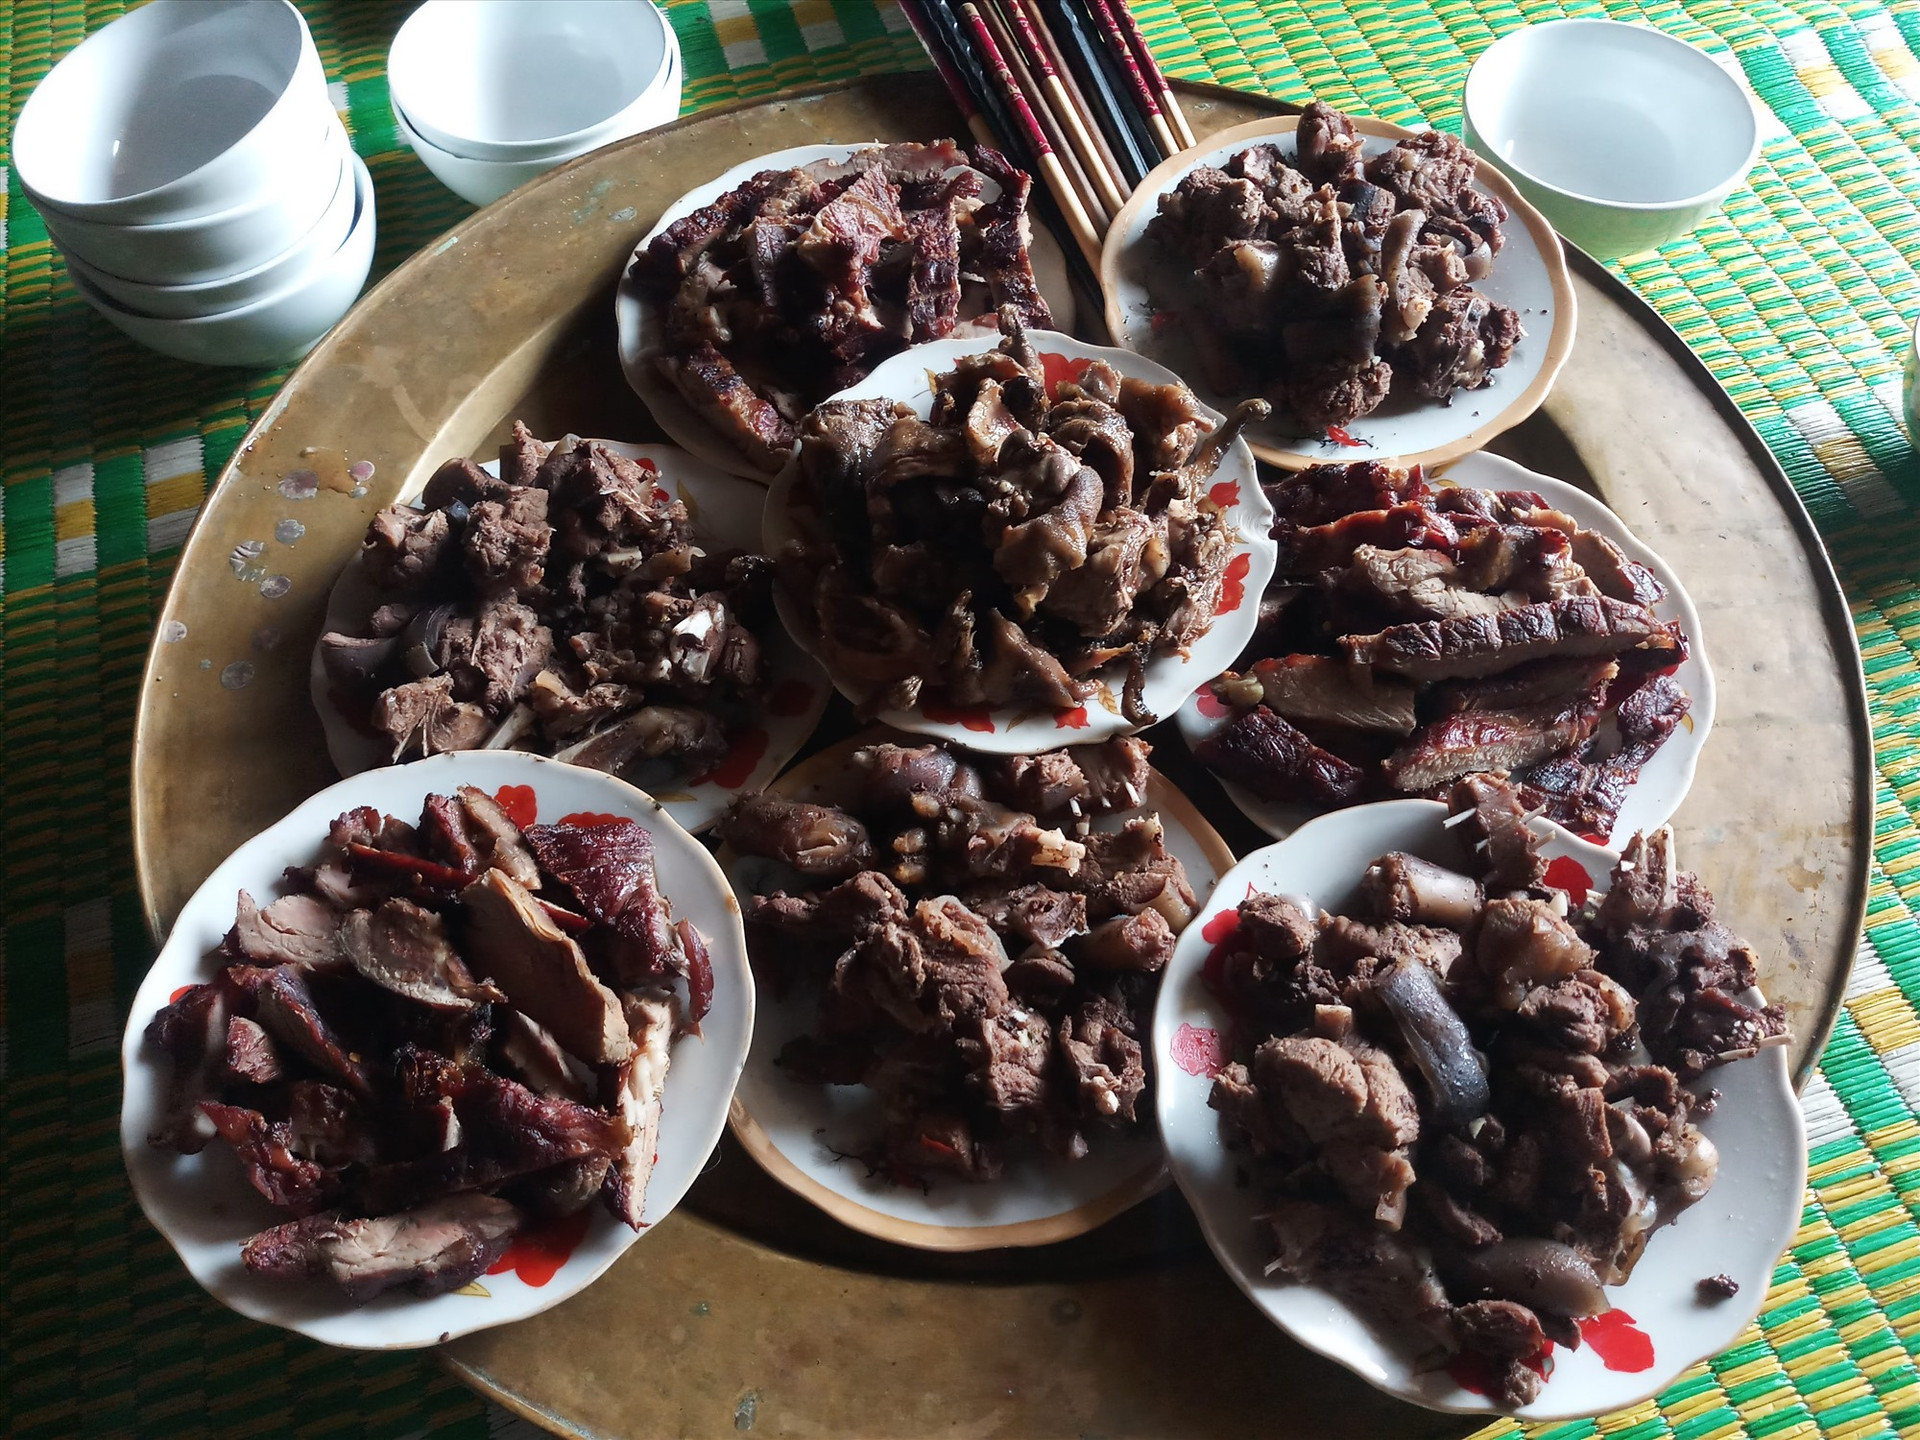 Cùng với các ẩm thực khác, thịt chuột núi được xem là món ăn truyền thống, thường được tiếp đãi khách quý trong lễ hội vùng cao. Ảnh: A.N